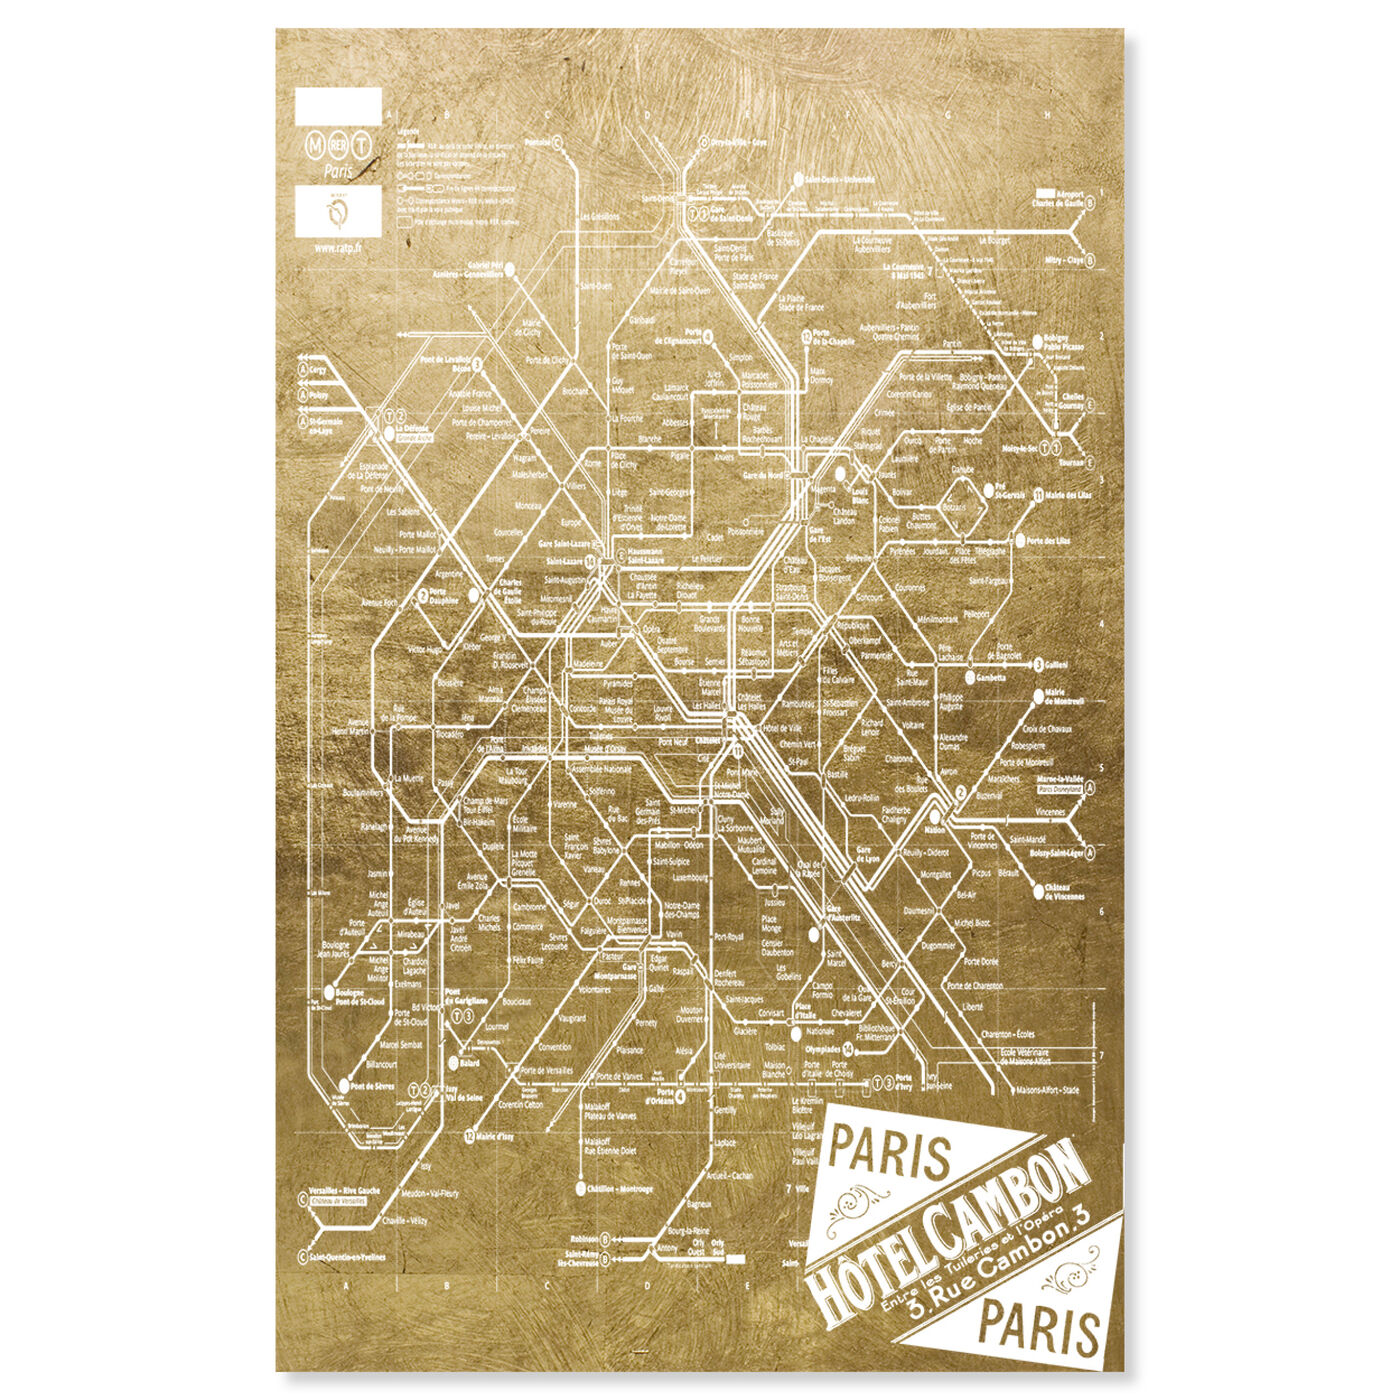 Paris Metro Map II